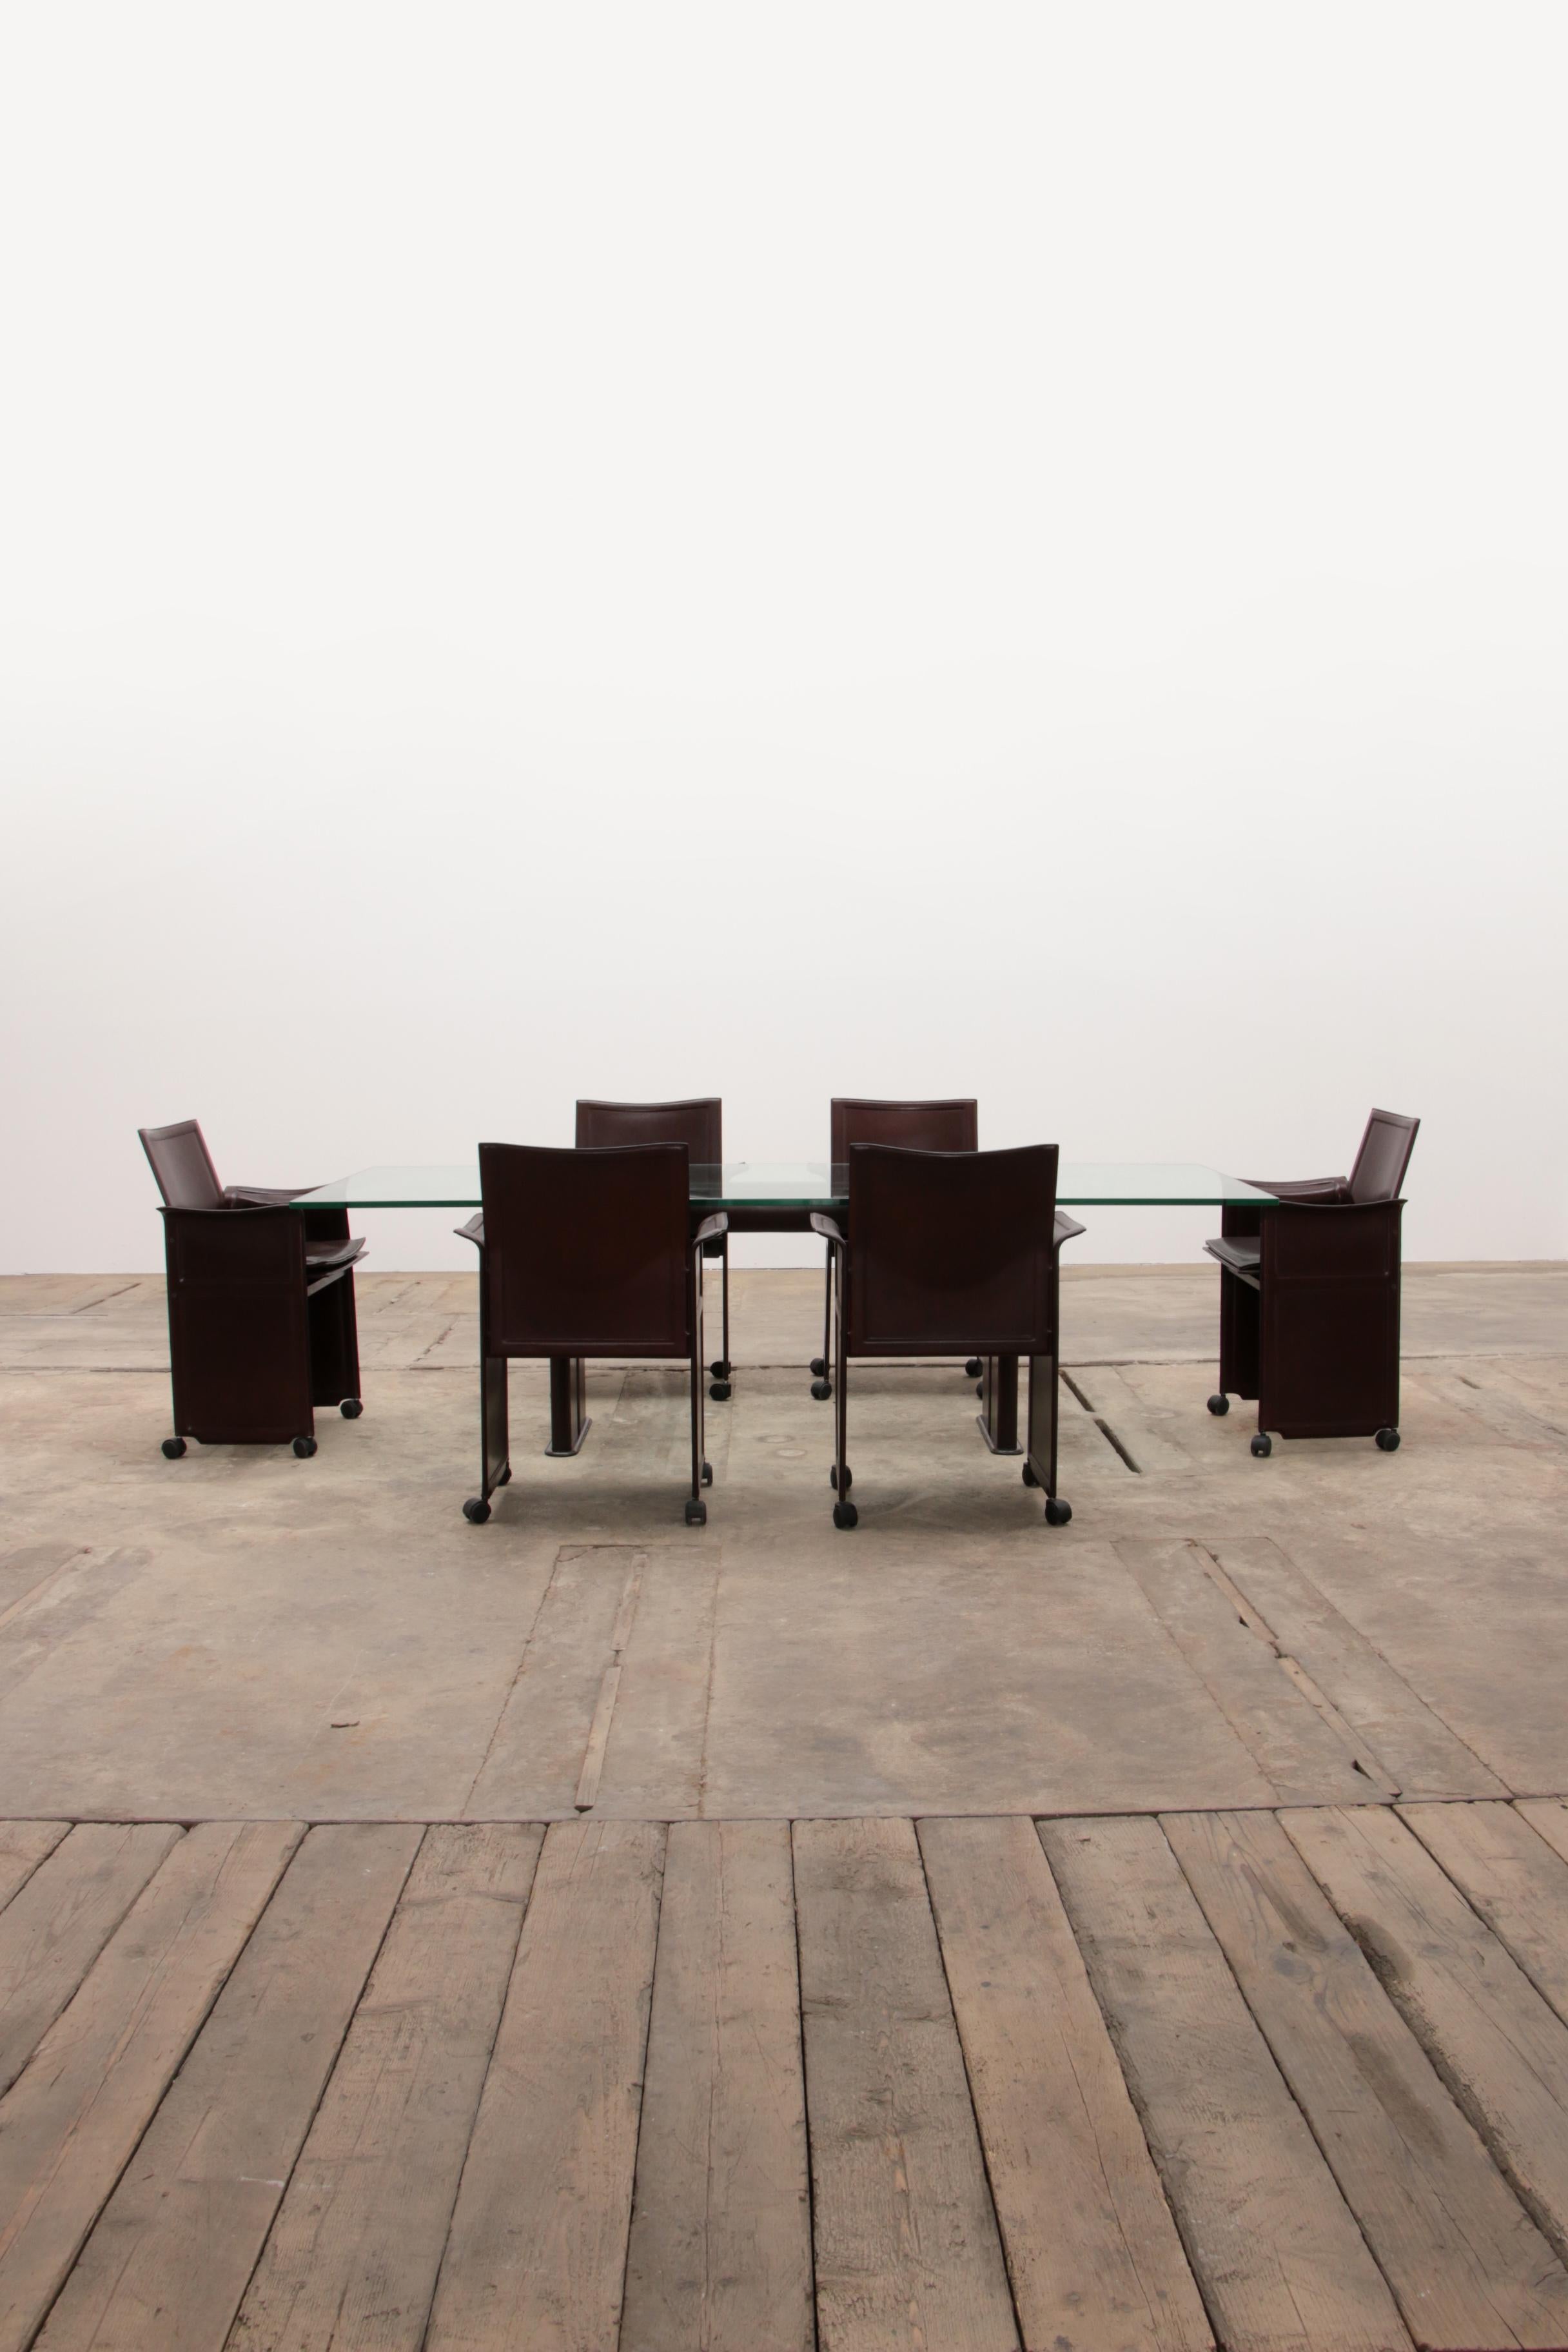 Table et six chaises en cuir Tito Agnoli pour Matteo Grassi.

La table a la même belle couleur brune et est recouverte de cuir. Le verre est en parfait état. Plaque de verre lourde de 1,5 cm d'épaisseur.

Ensemble moderne de 6 chaises ou fauteuils